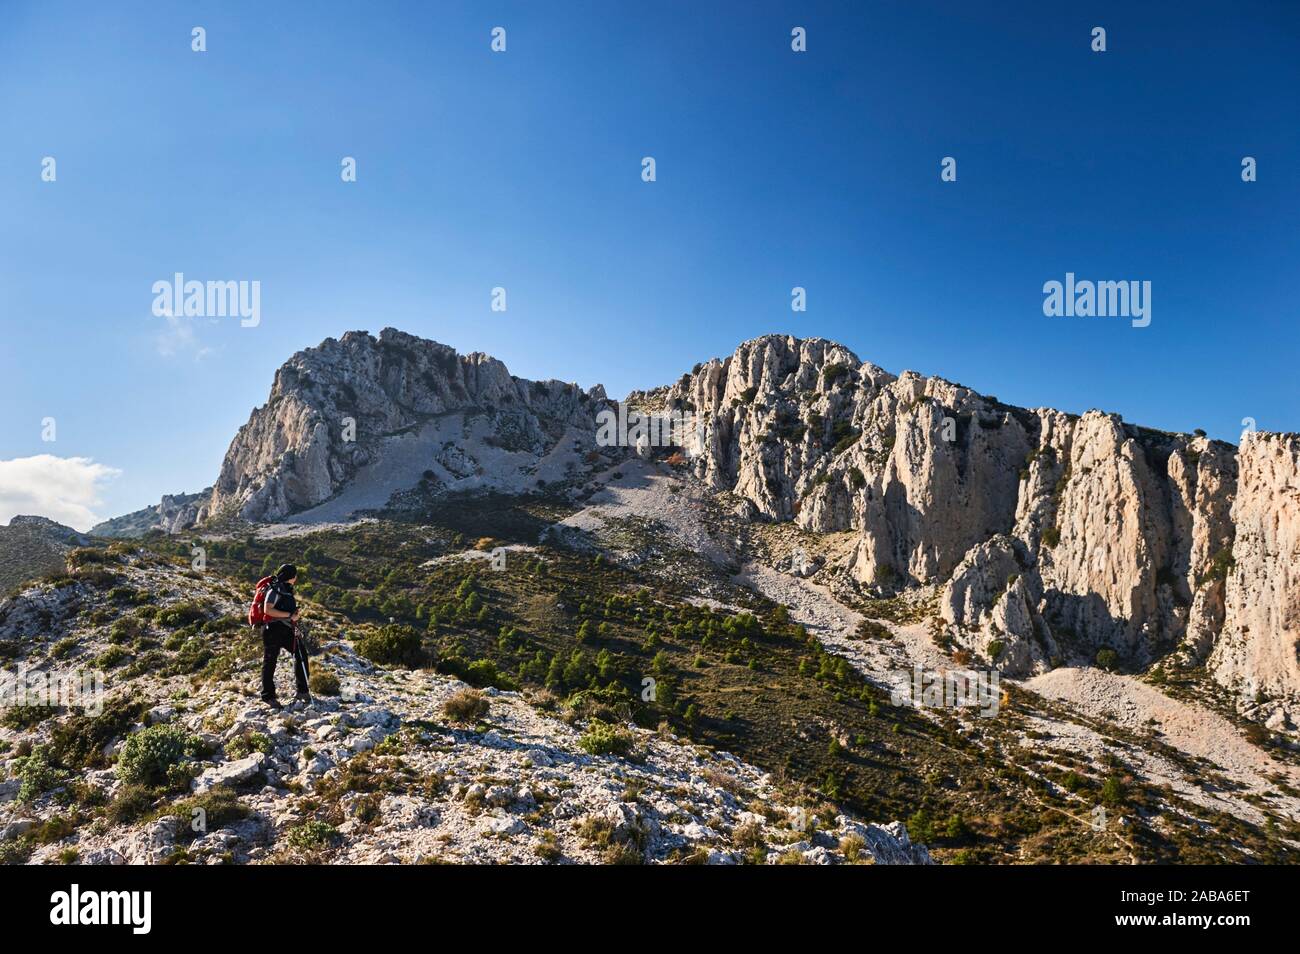 Woman with red backpack hiking near Pla de la Casa peak in Serrella mountain range, Confrides (province of Alicante, Valencian Community) Stock Photo